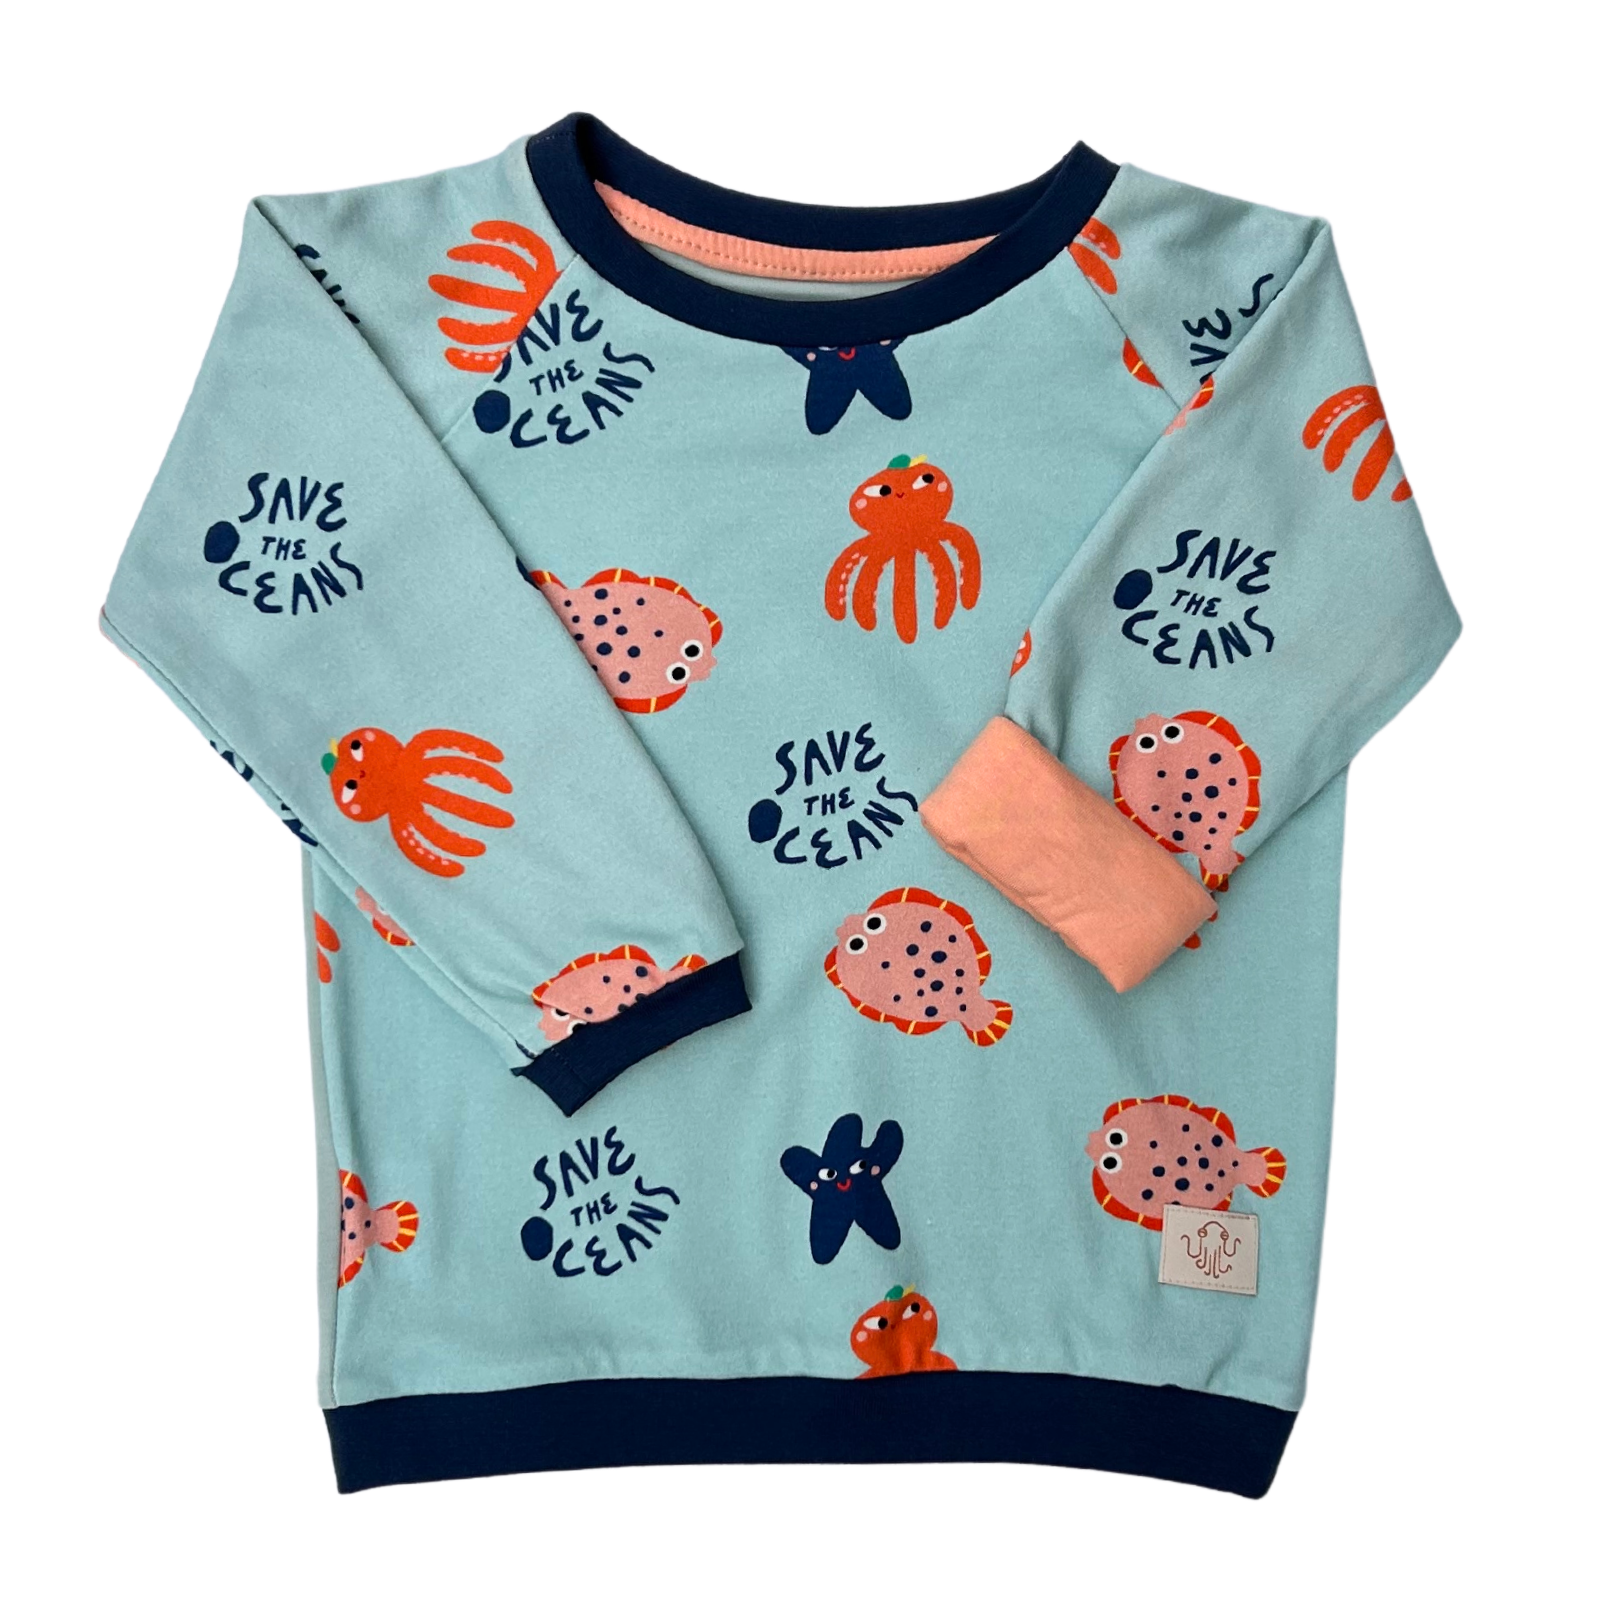 Fairer Alltagsbegleiter für Kinder aus Bio-Baumwolle mit Meerestiere-Motiv im Unisex-Schnitt von der Marke Oktopulli